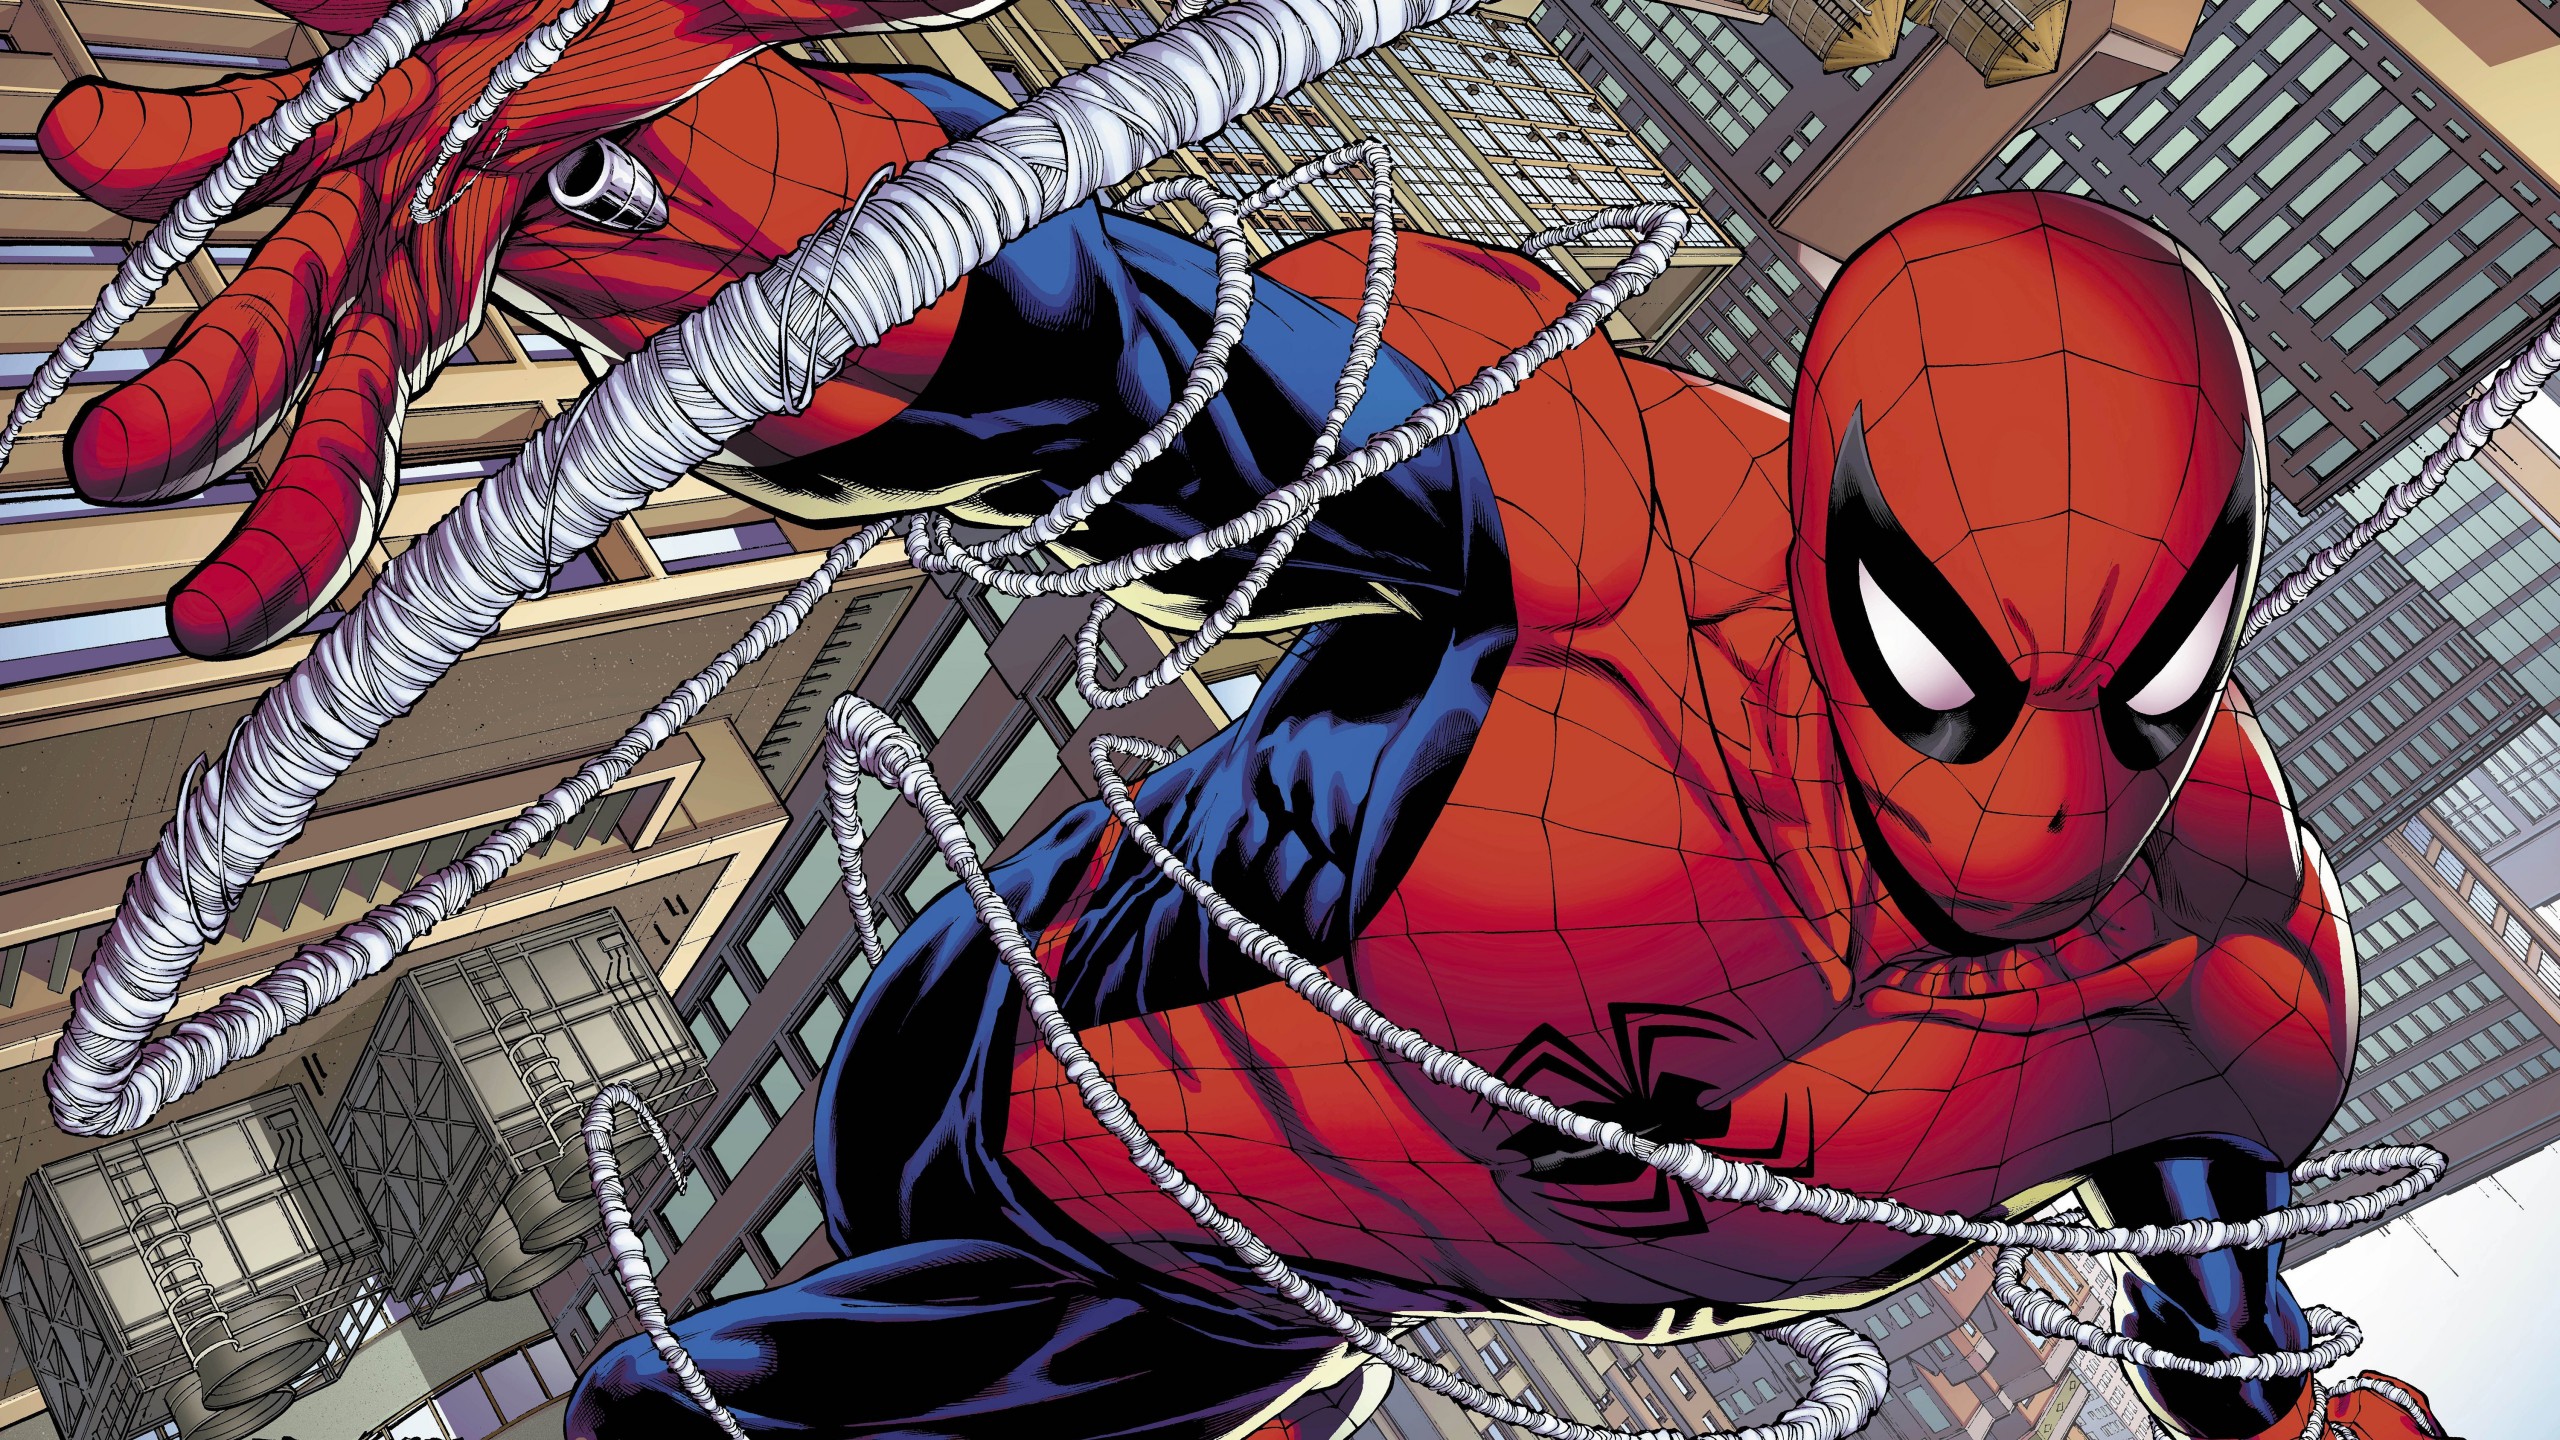 General 2560x1440 Spider-Man comics comic art artwork digital art Marvel Comics Peter Parker